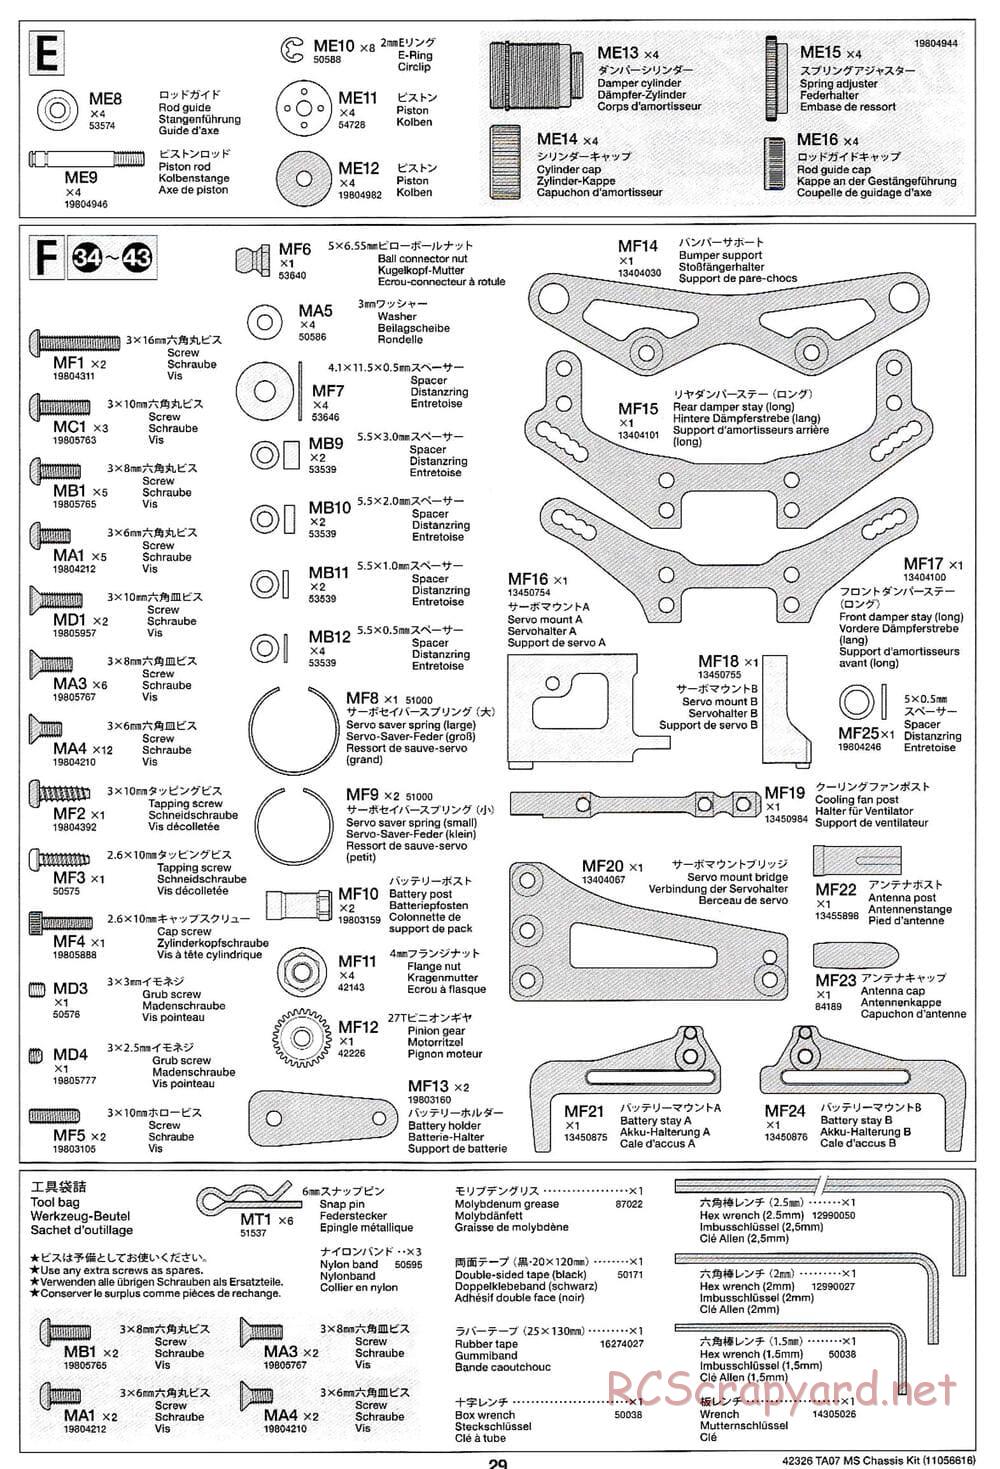 Tamiya - TA07 MS Chassis - Manual - Page 29